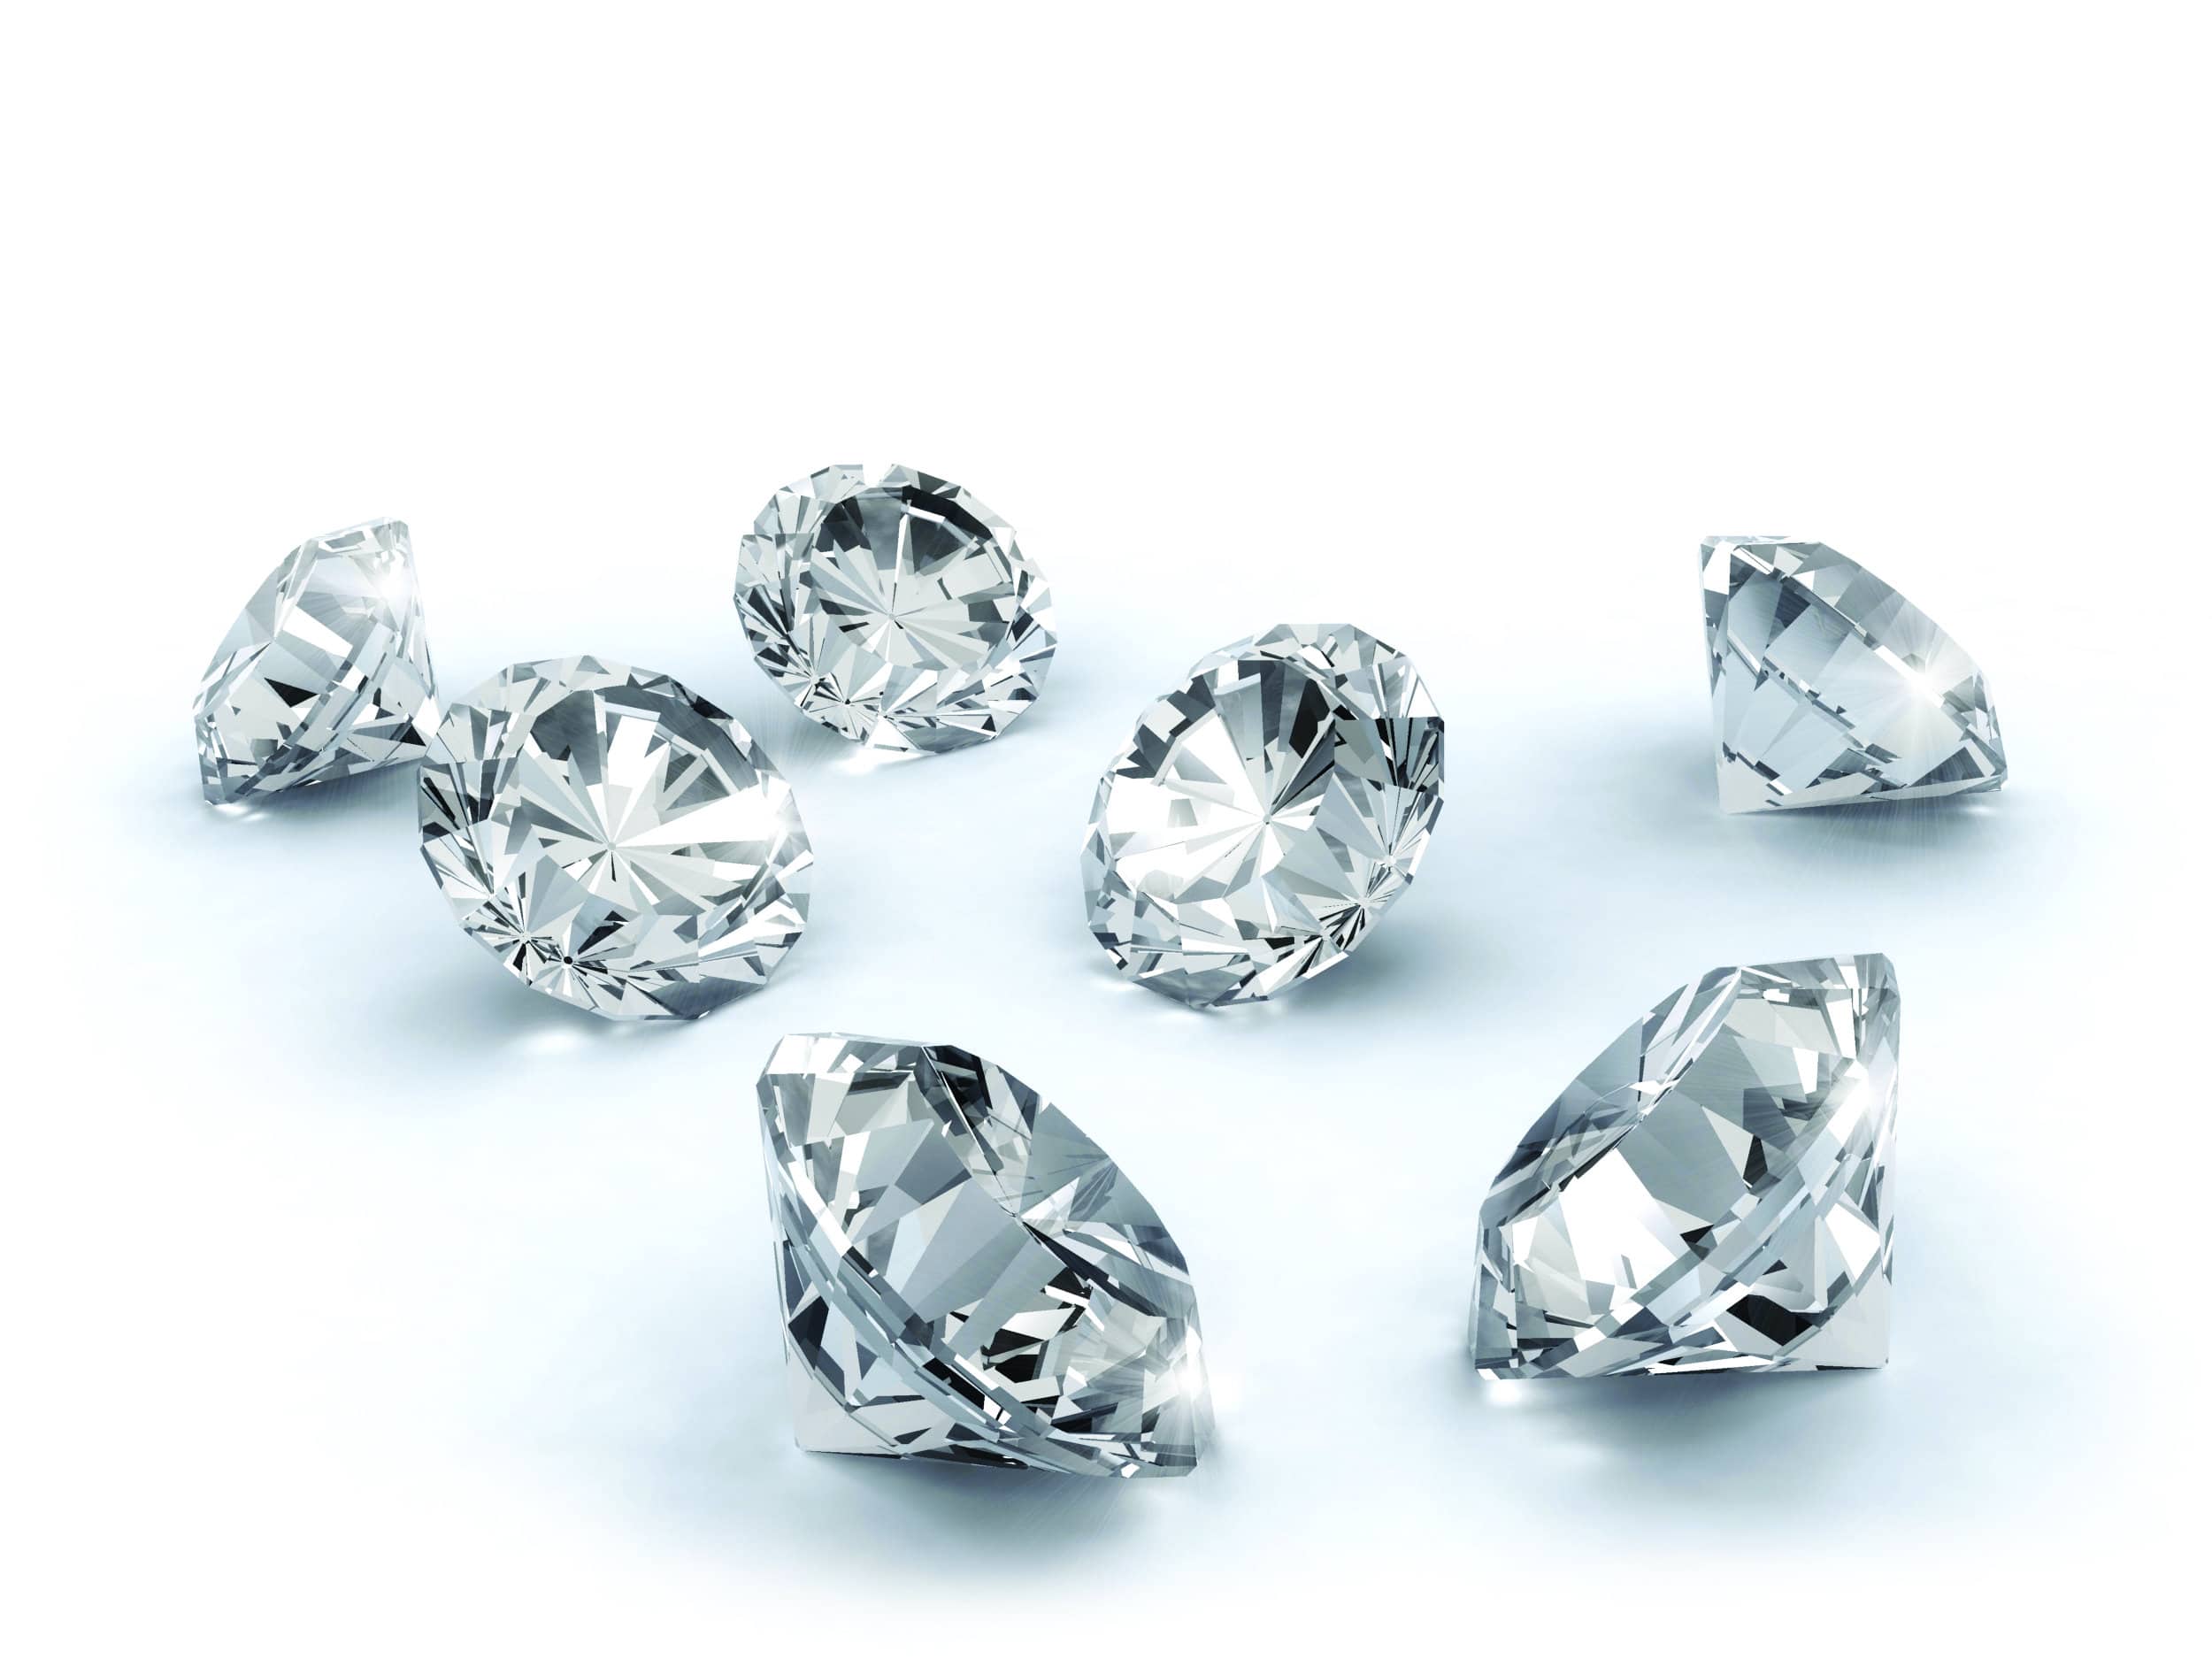 Diamond jewelry layout